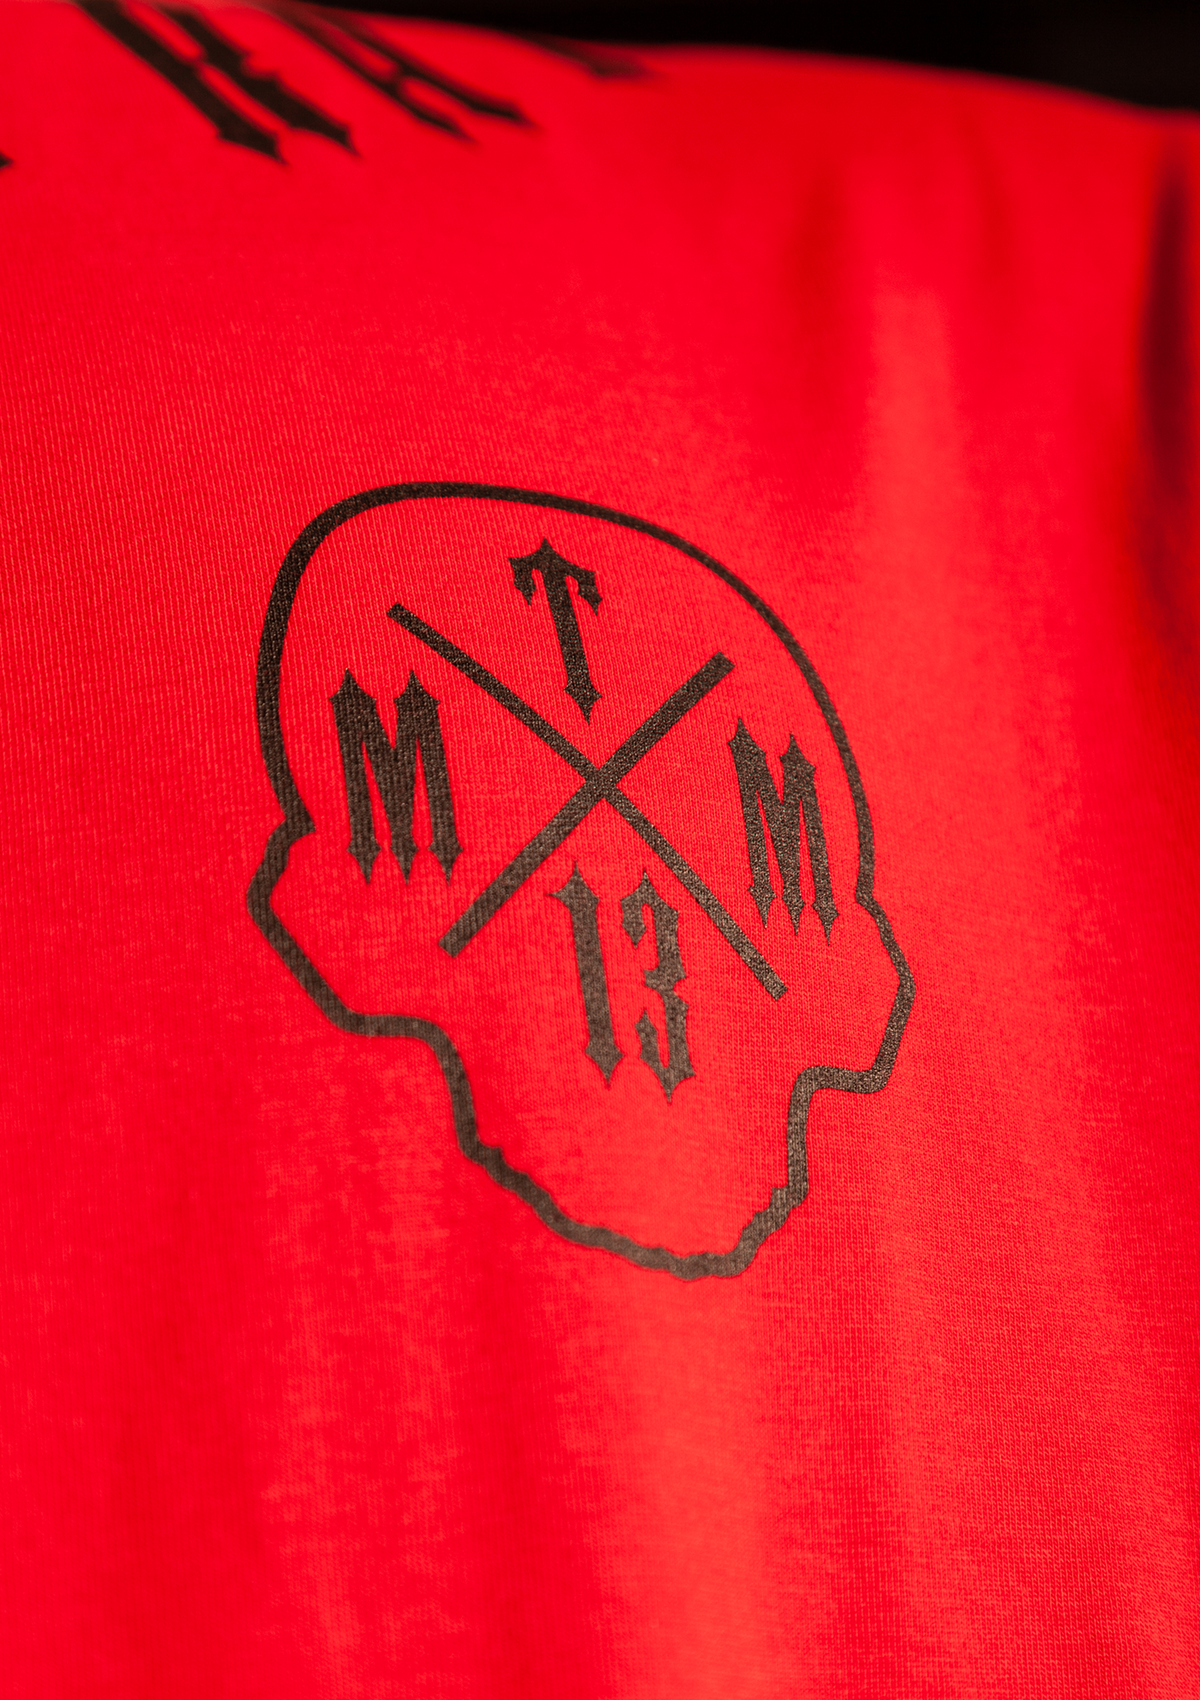 T-shirt Mayhem ROR 13 R/S